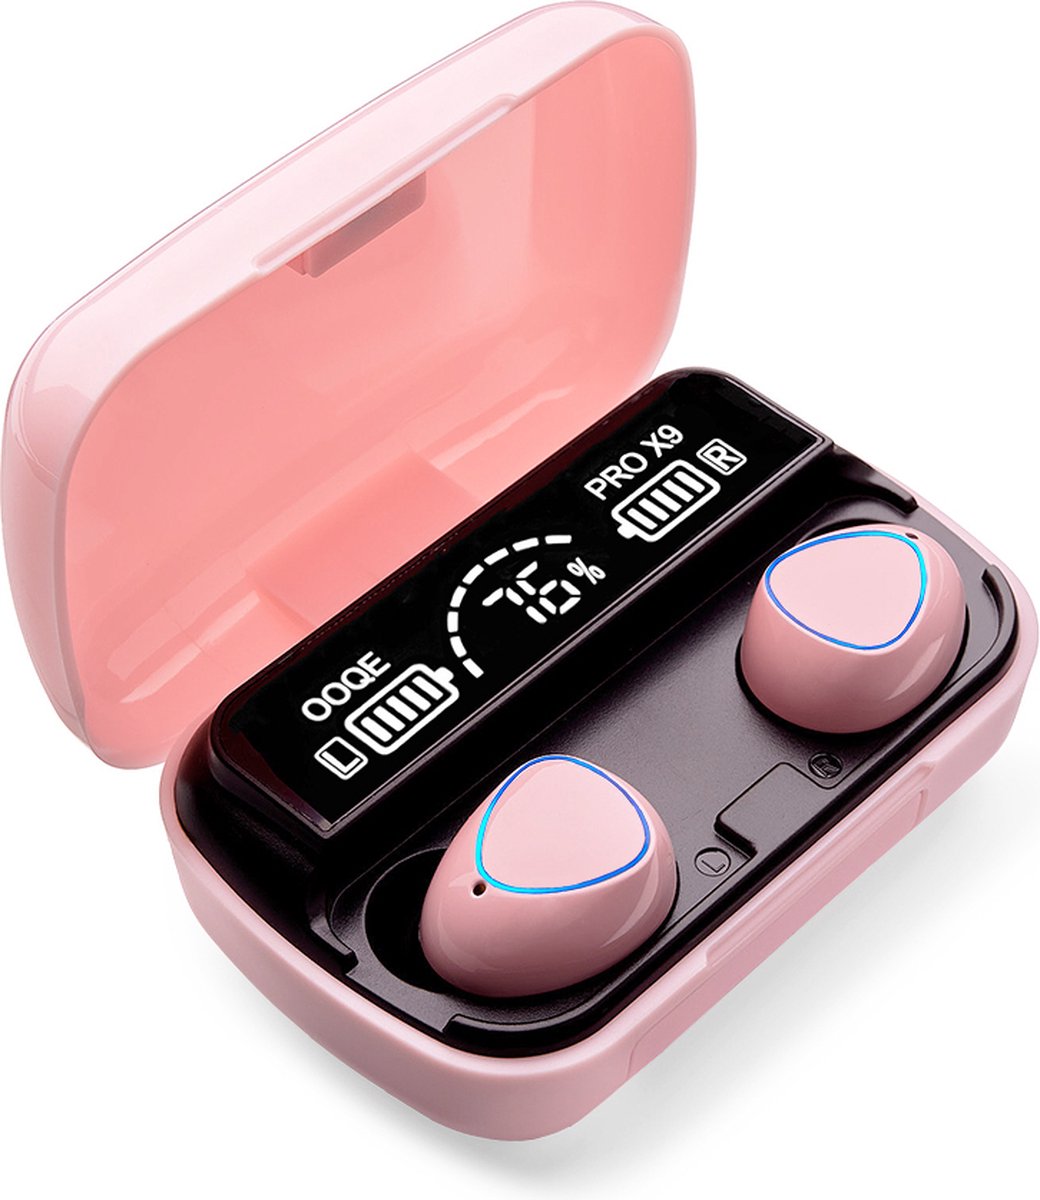 OOQE PRO X9 Draadloze Oordopjes - 80 uur batterijduur | Water- & stofbestendig | Bluetooth 5.1 | Roze